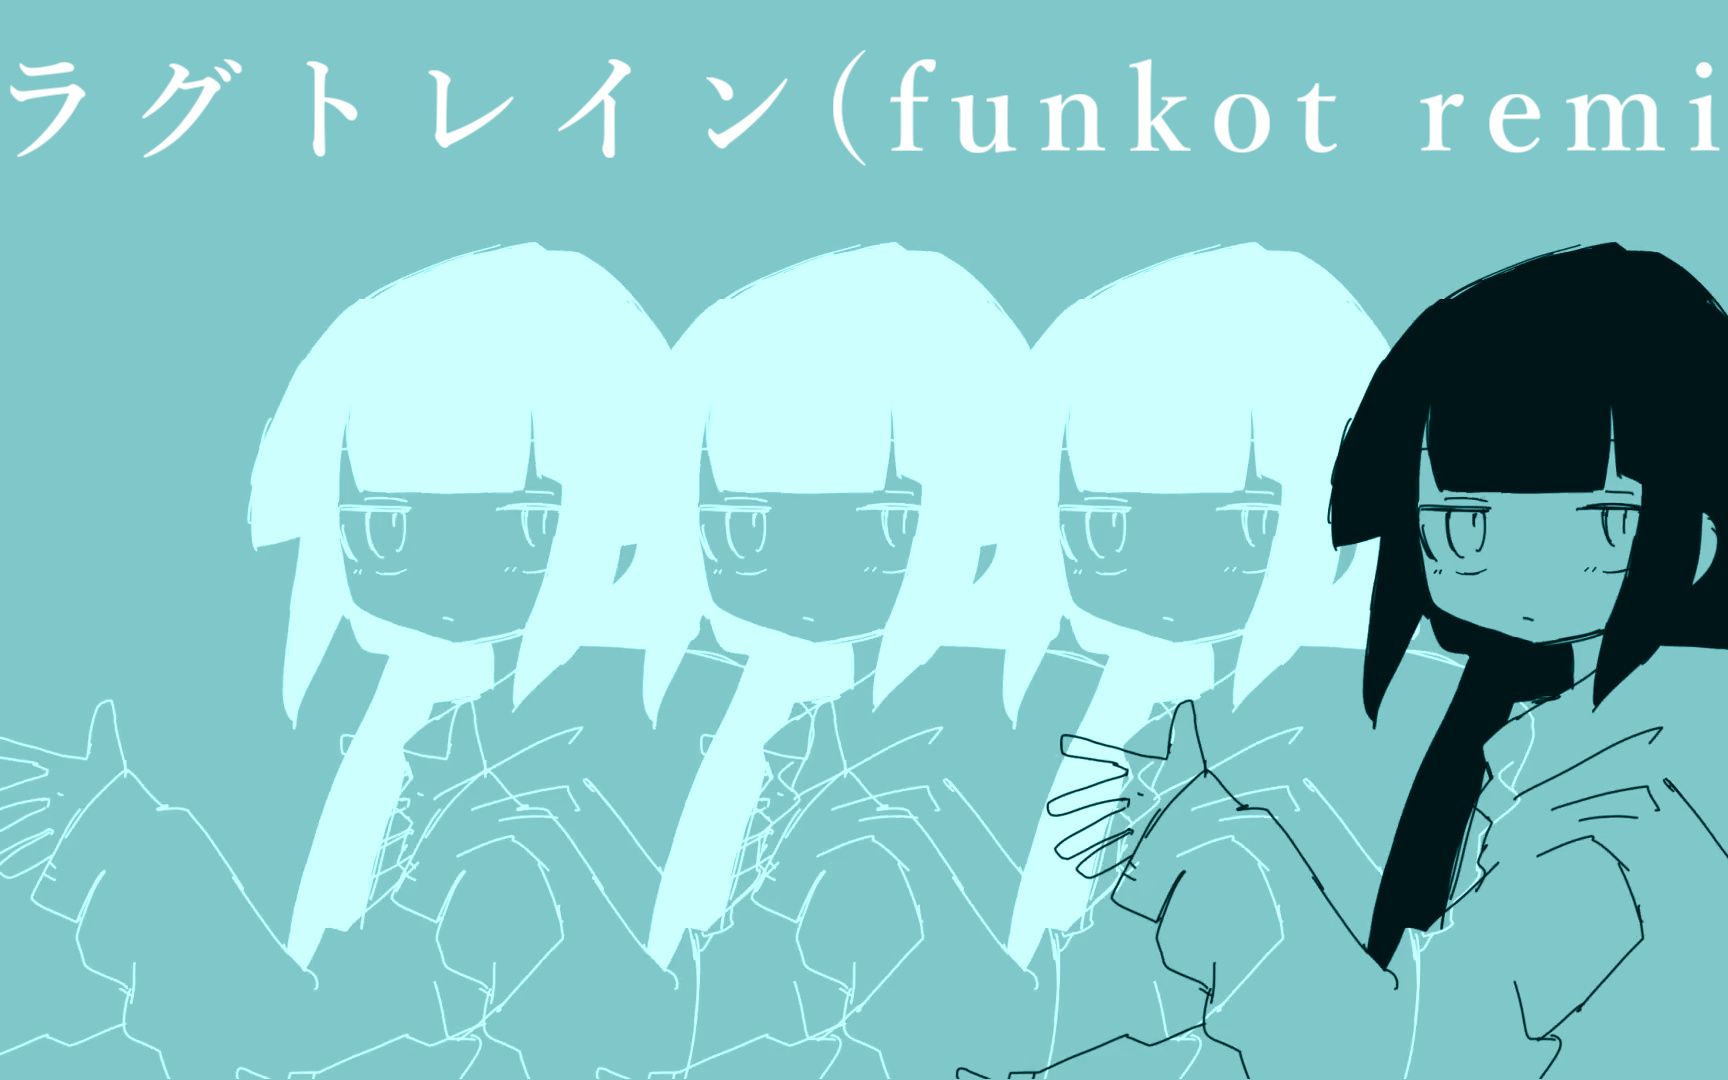 【歌愛ユキ】 ラグトレイン (funkot remix) 【アレンジ】